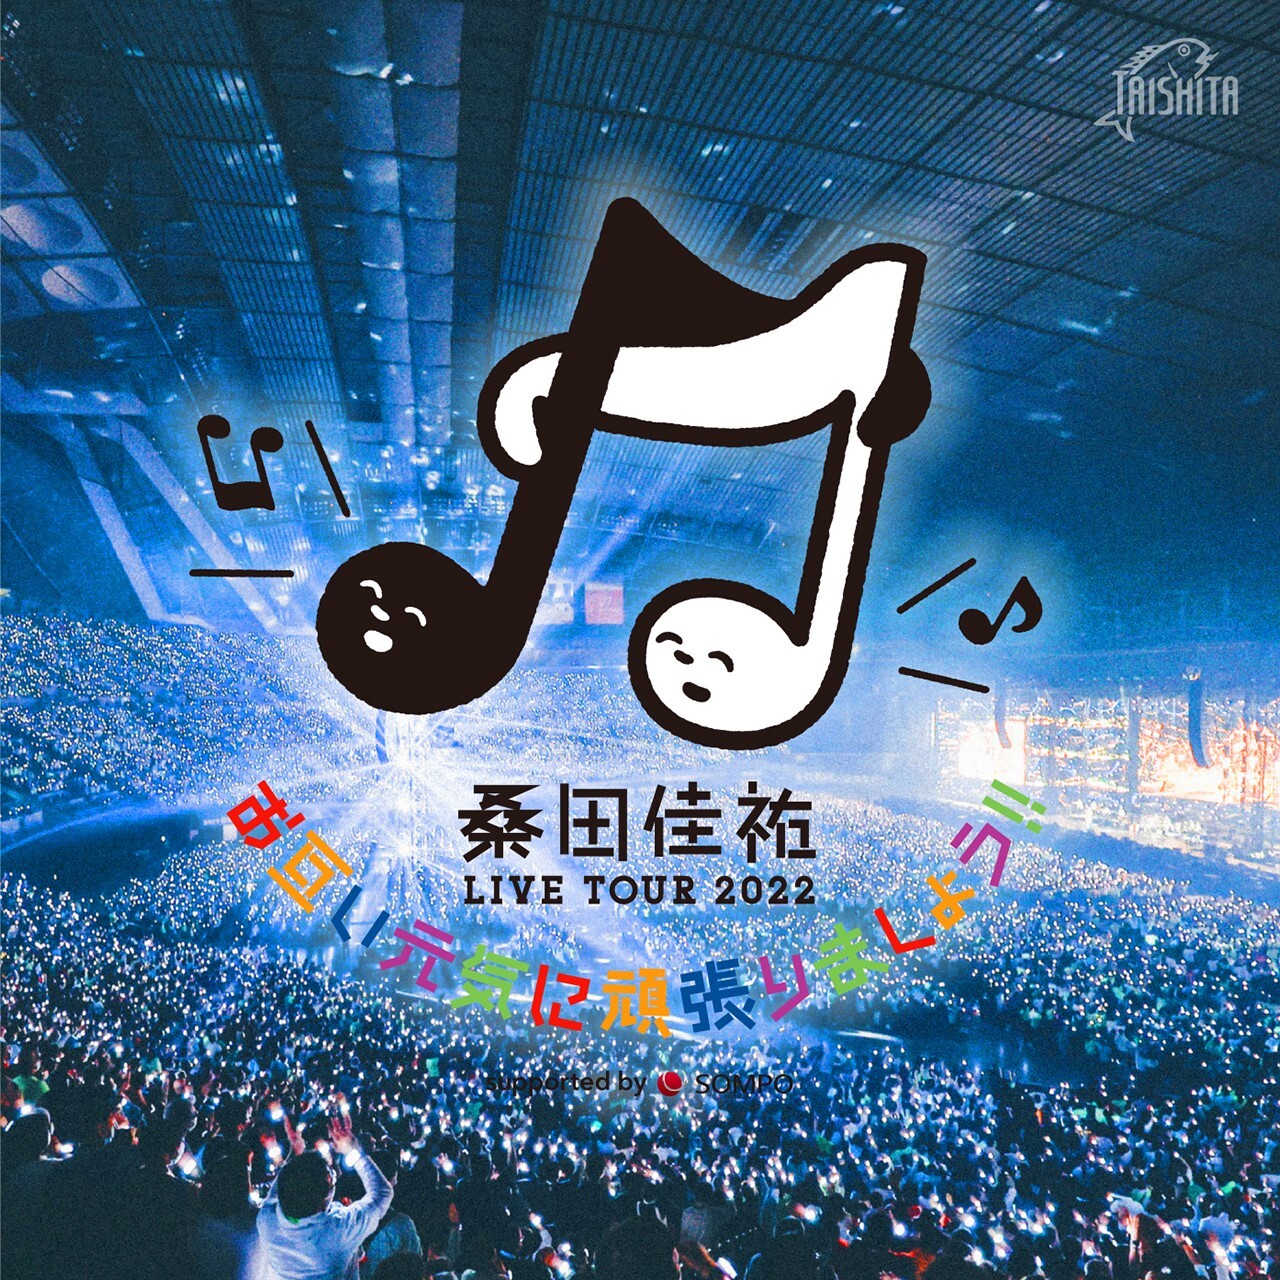 桑田佳祐 LIVE TOUR 2022「お互い元気に頑張りましょう!!」セットリスト